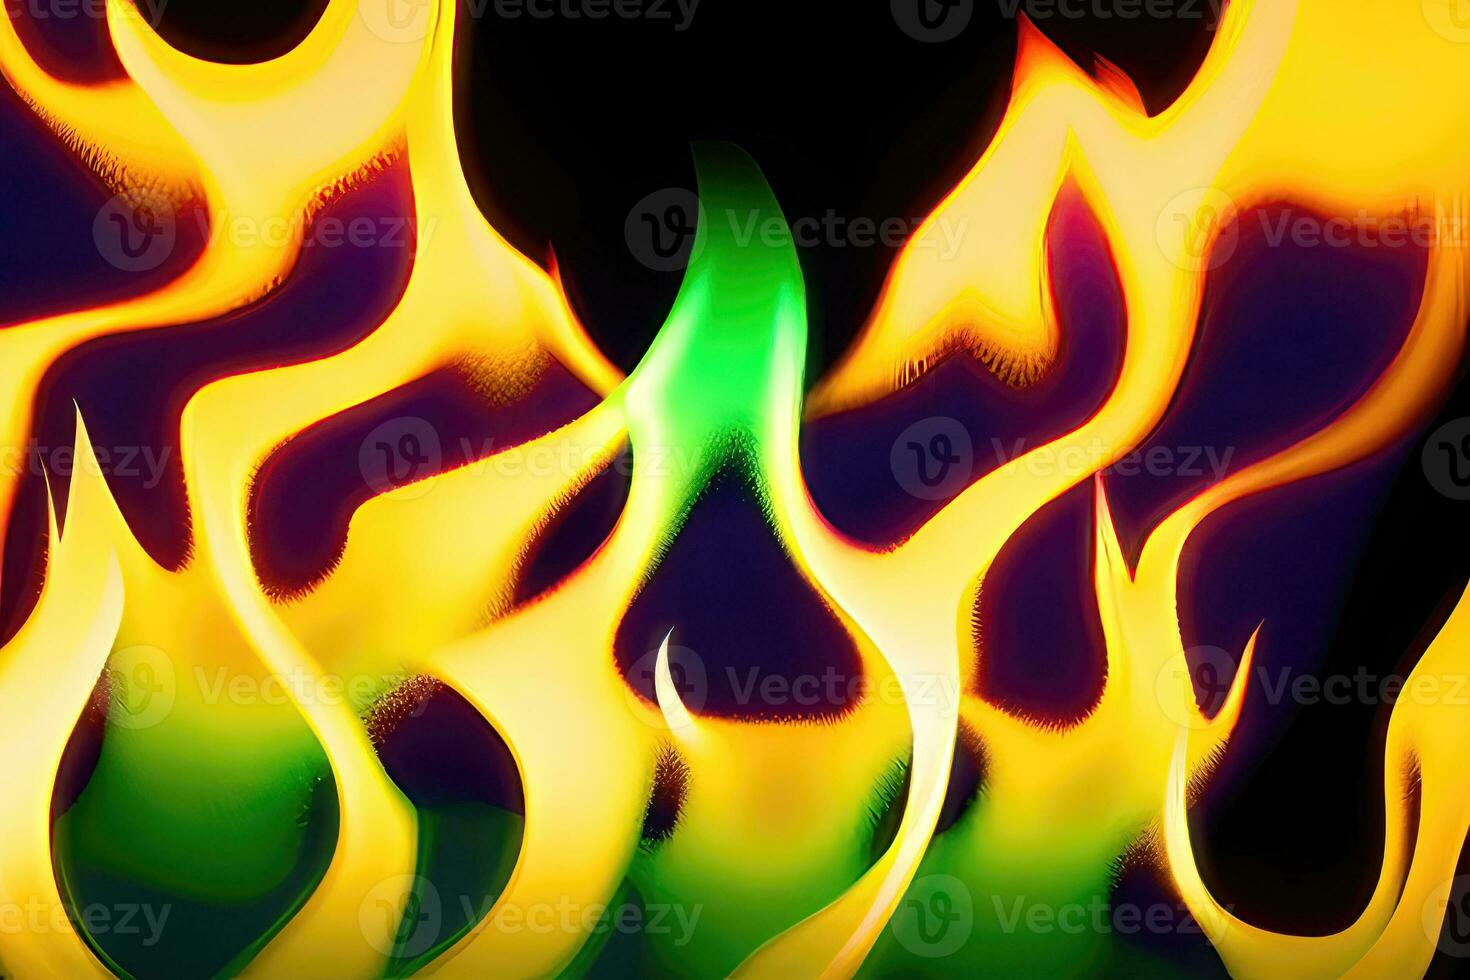 abstract brand - een levendig en gloeiend achtergrond van brandend elementen foto